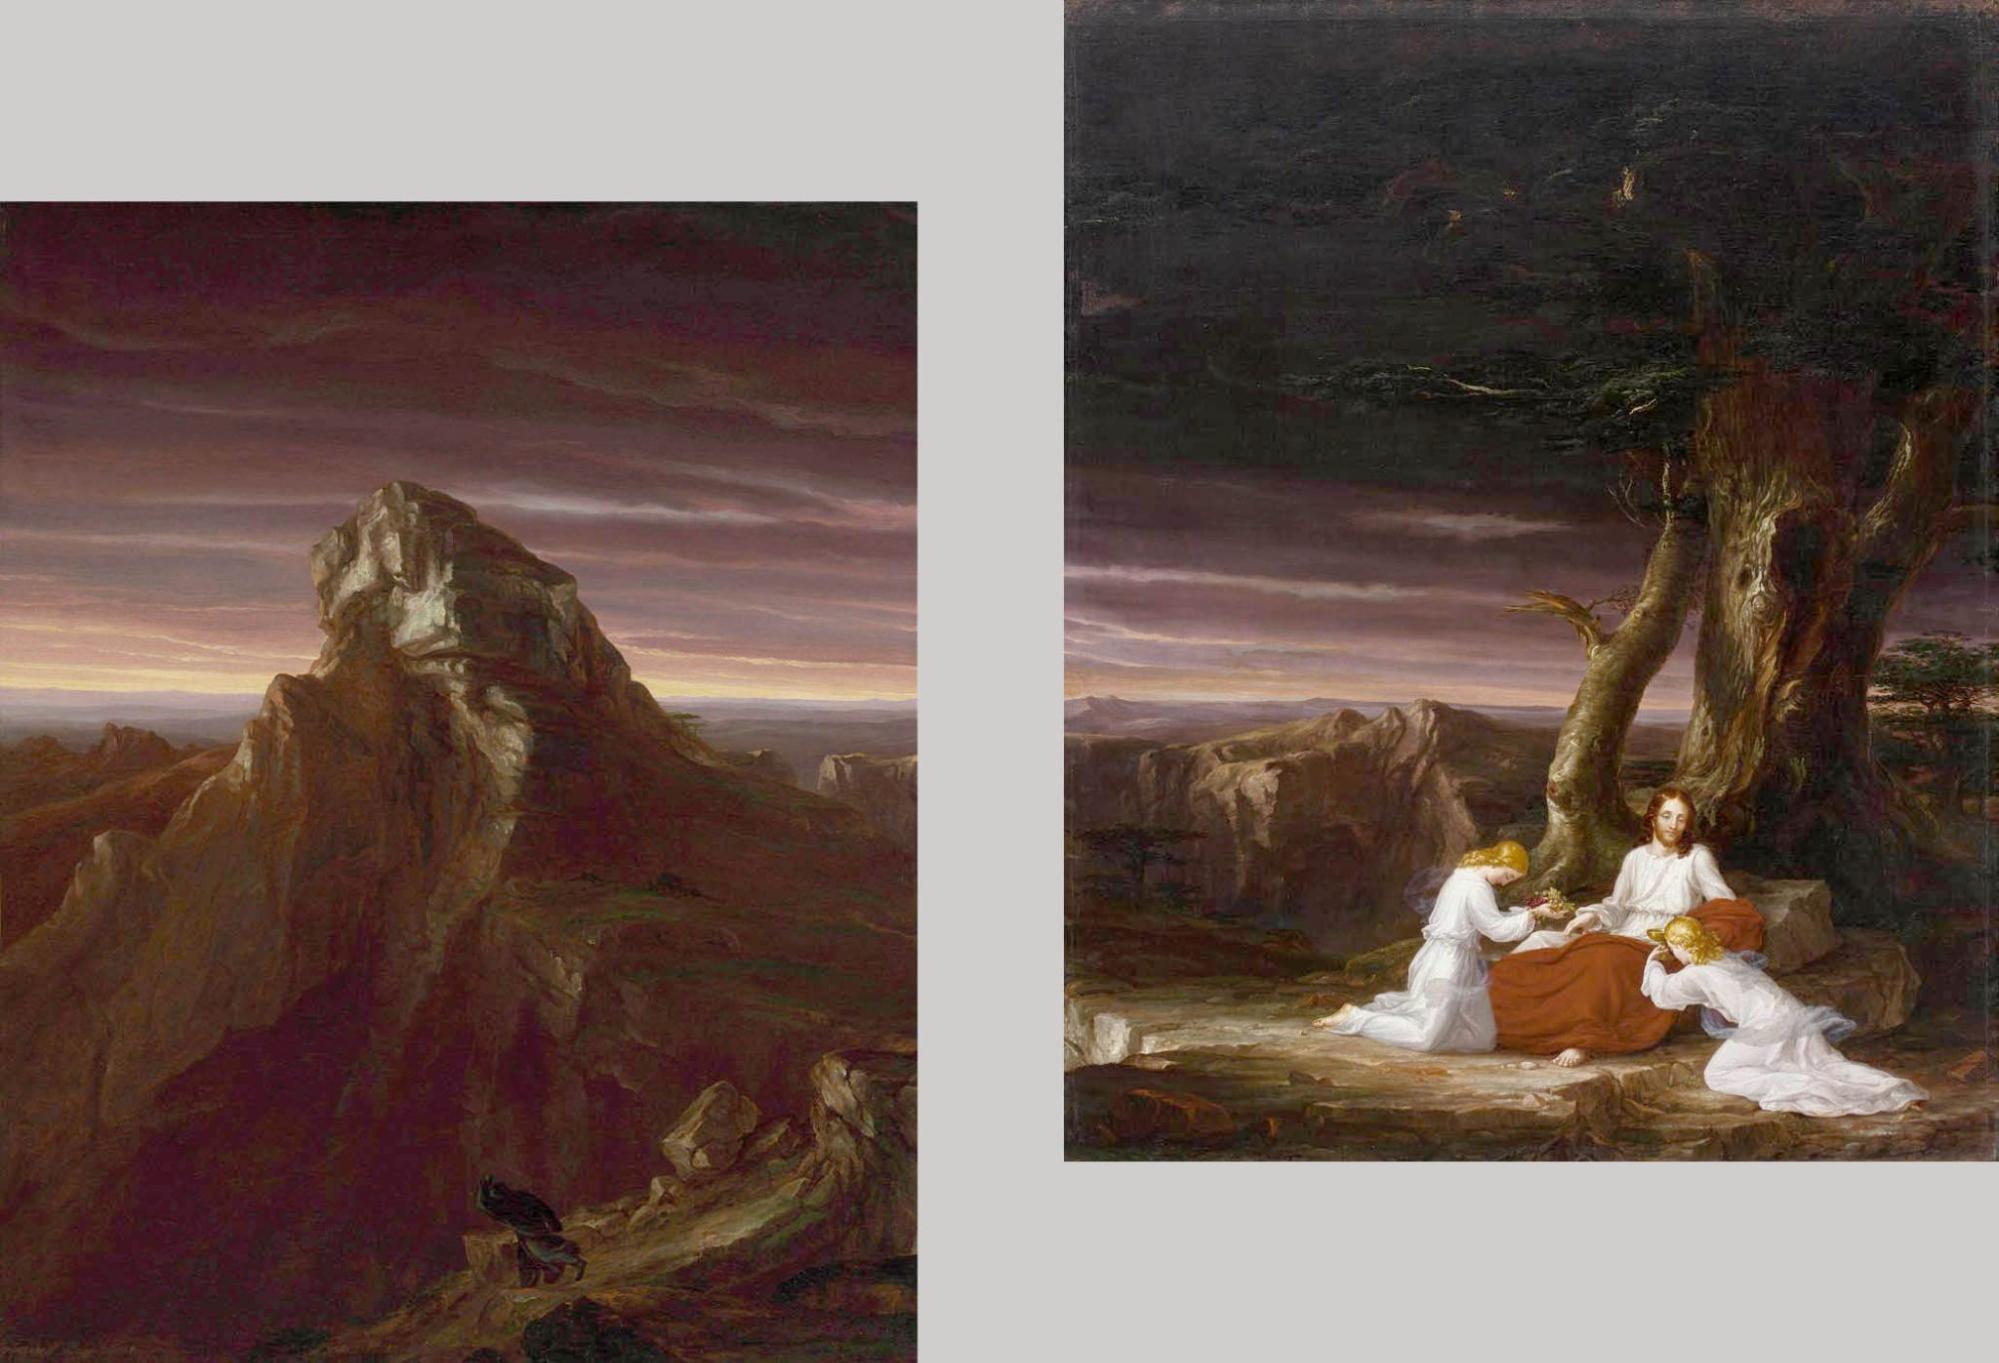 Trick photograph of Bierstadt